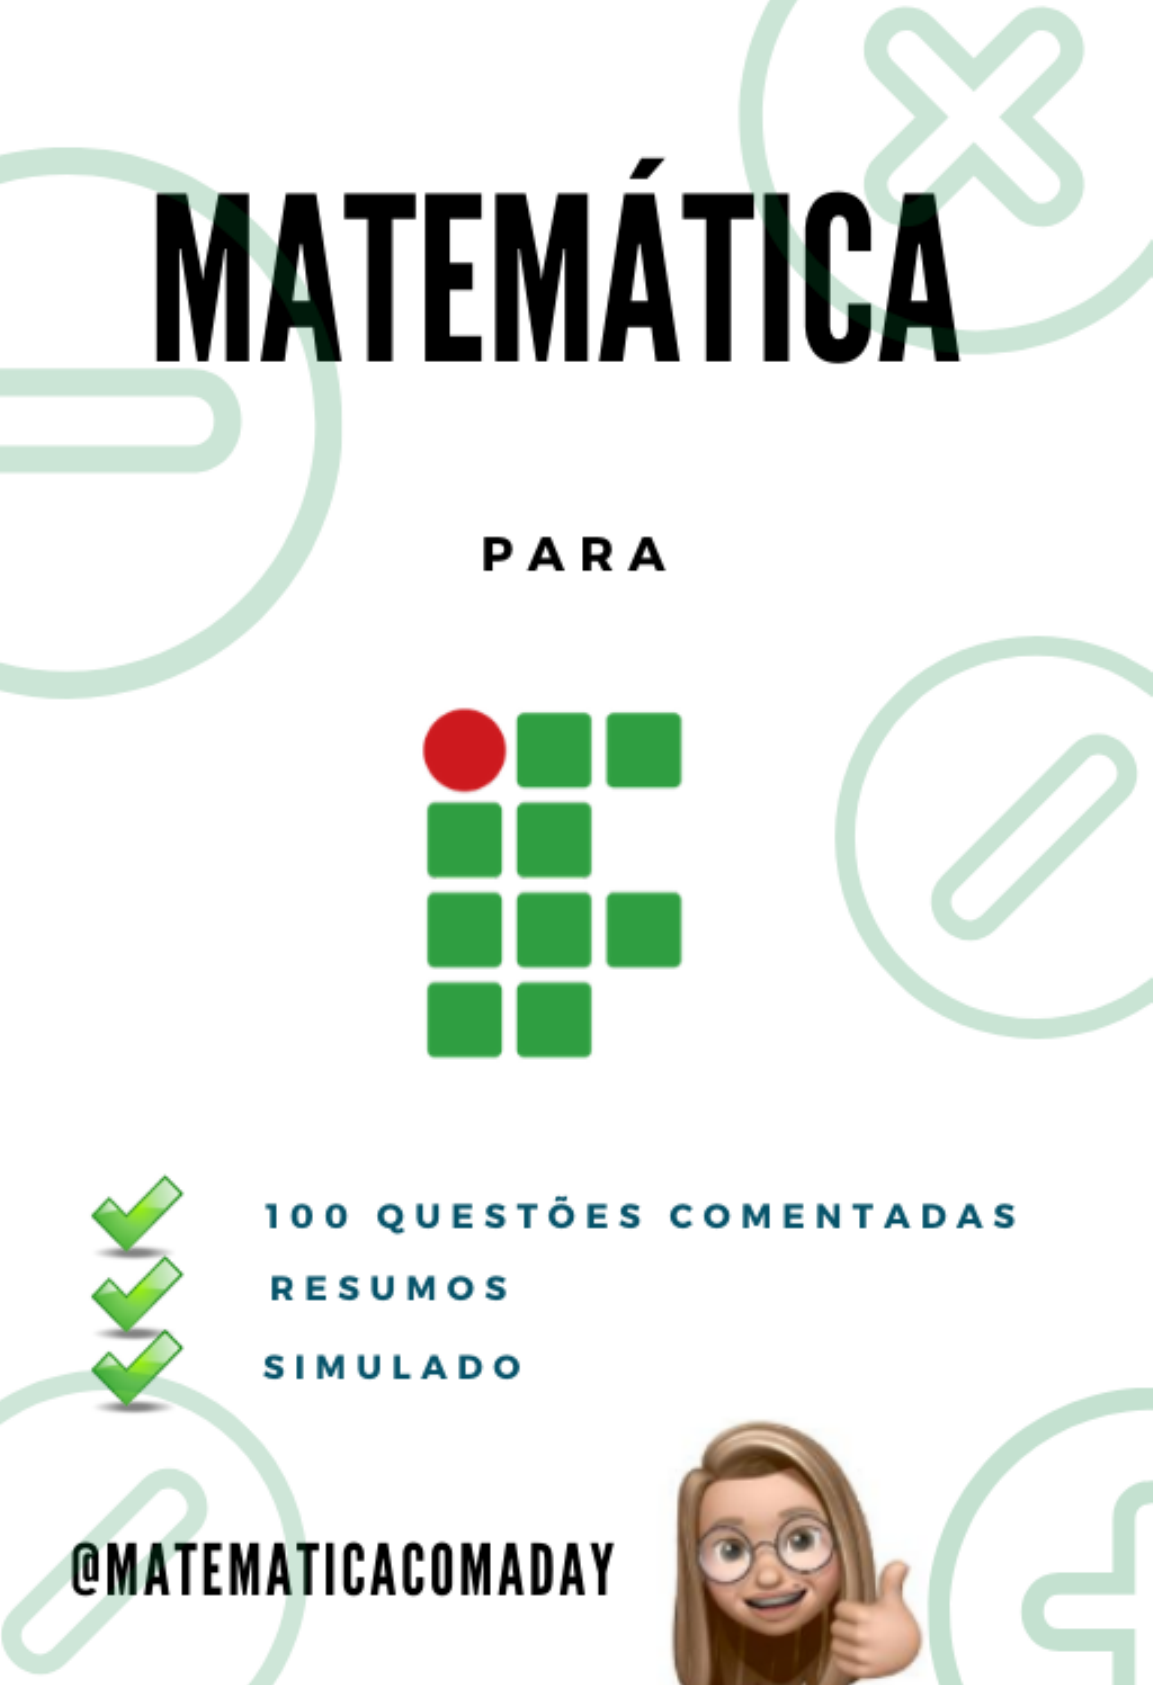 Recordando Matemática. : Regra de Sinais na Matemática  Truques de  matemática, Matemática, Ensino de matemática